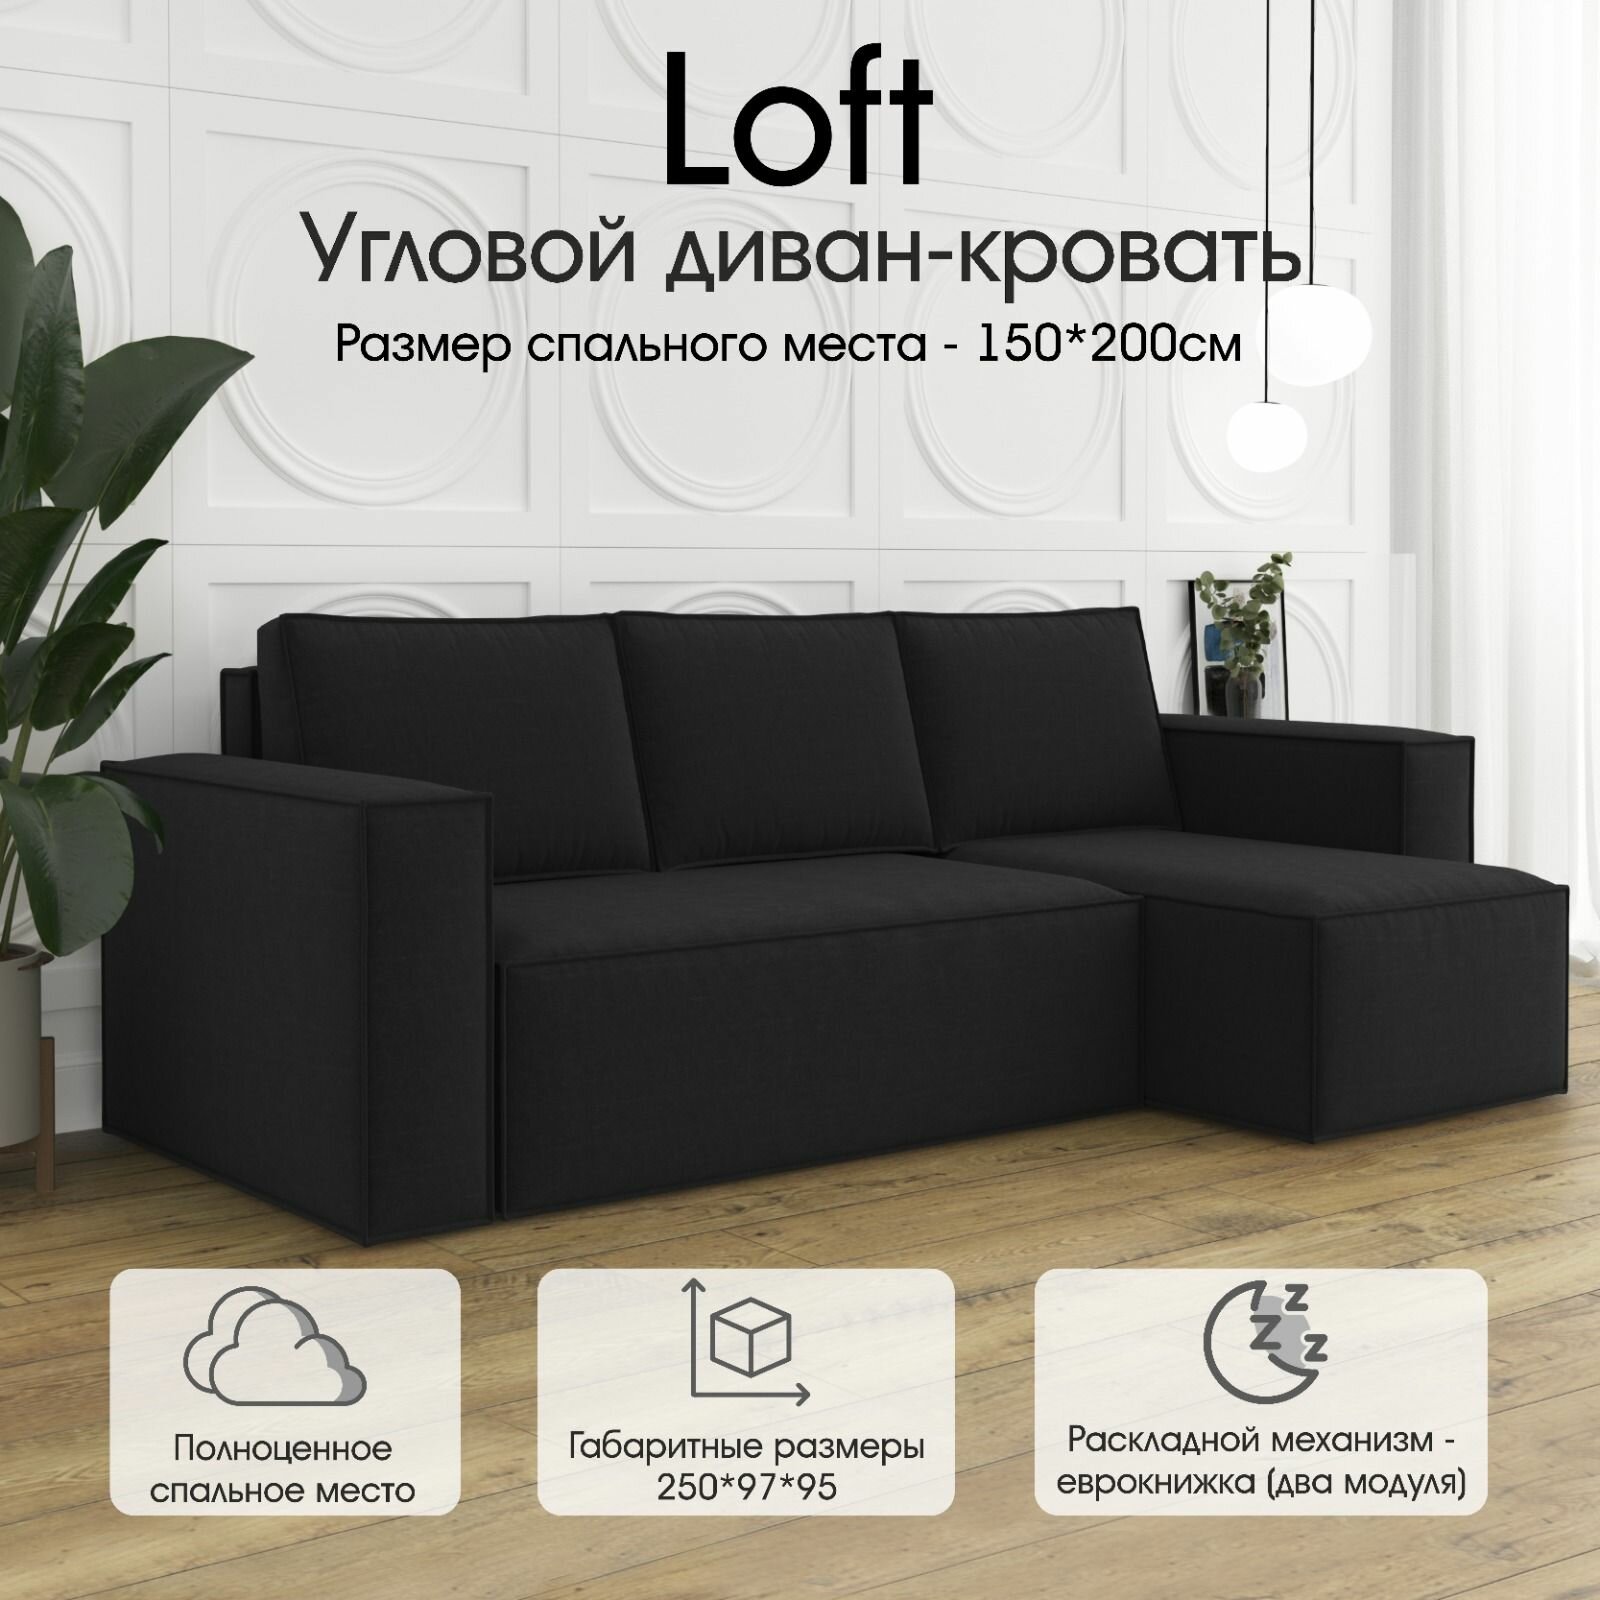 Дизайнерский угловой диван от мебельной фабрики Luxson: "Loft" со спальным местом 150х200.